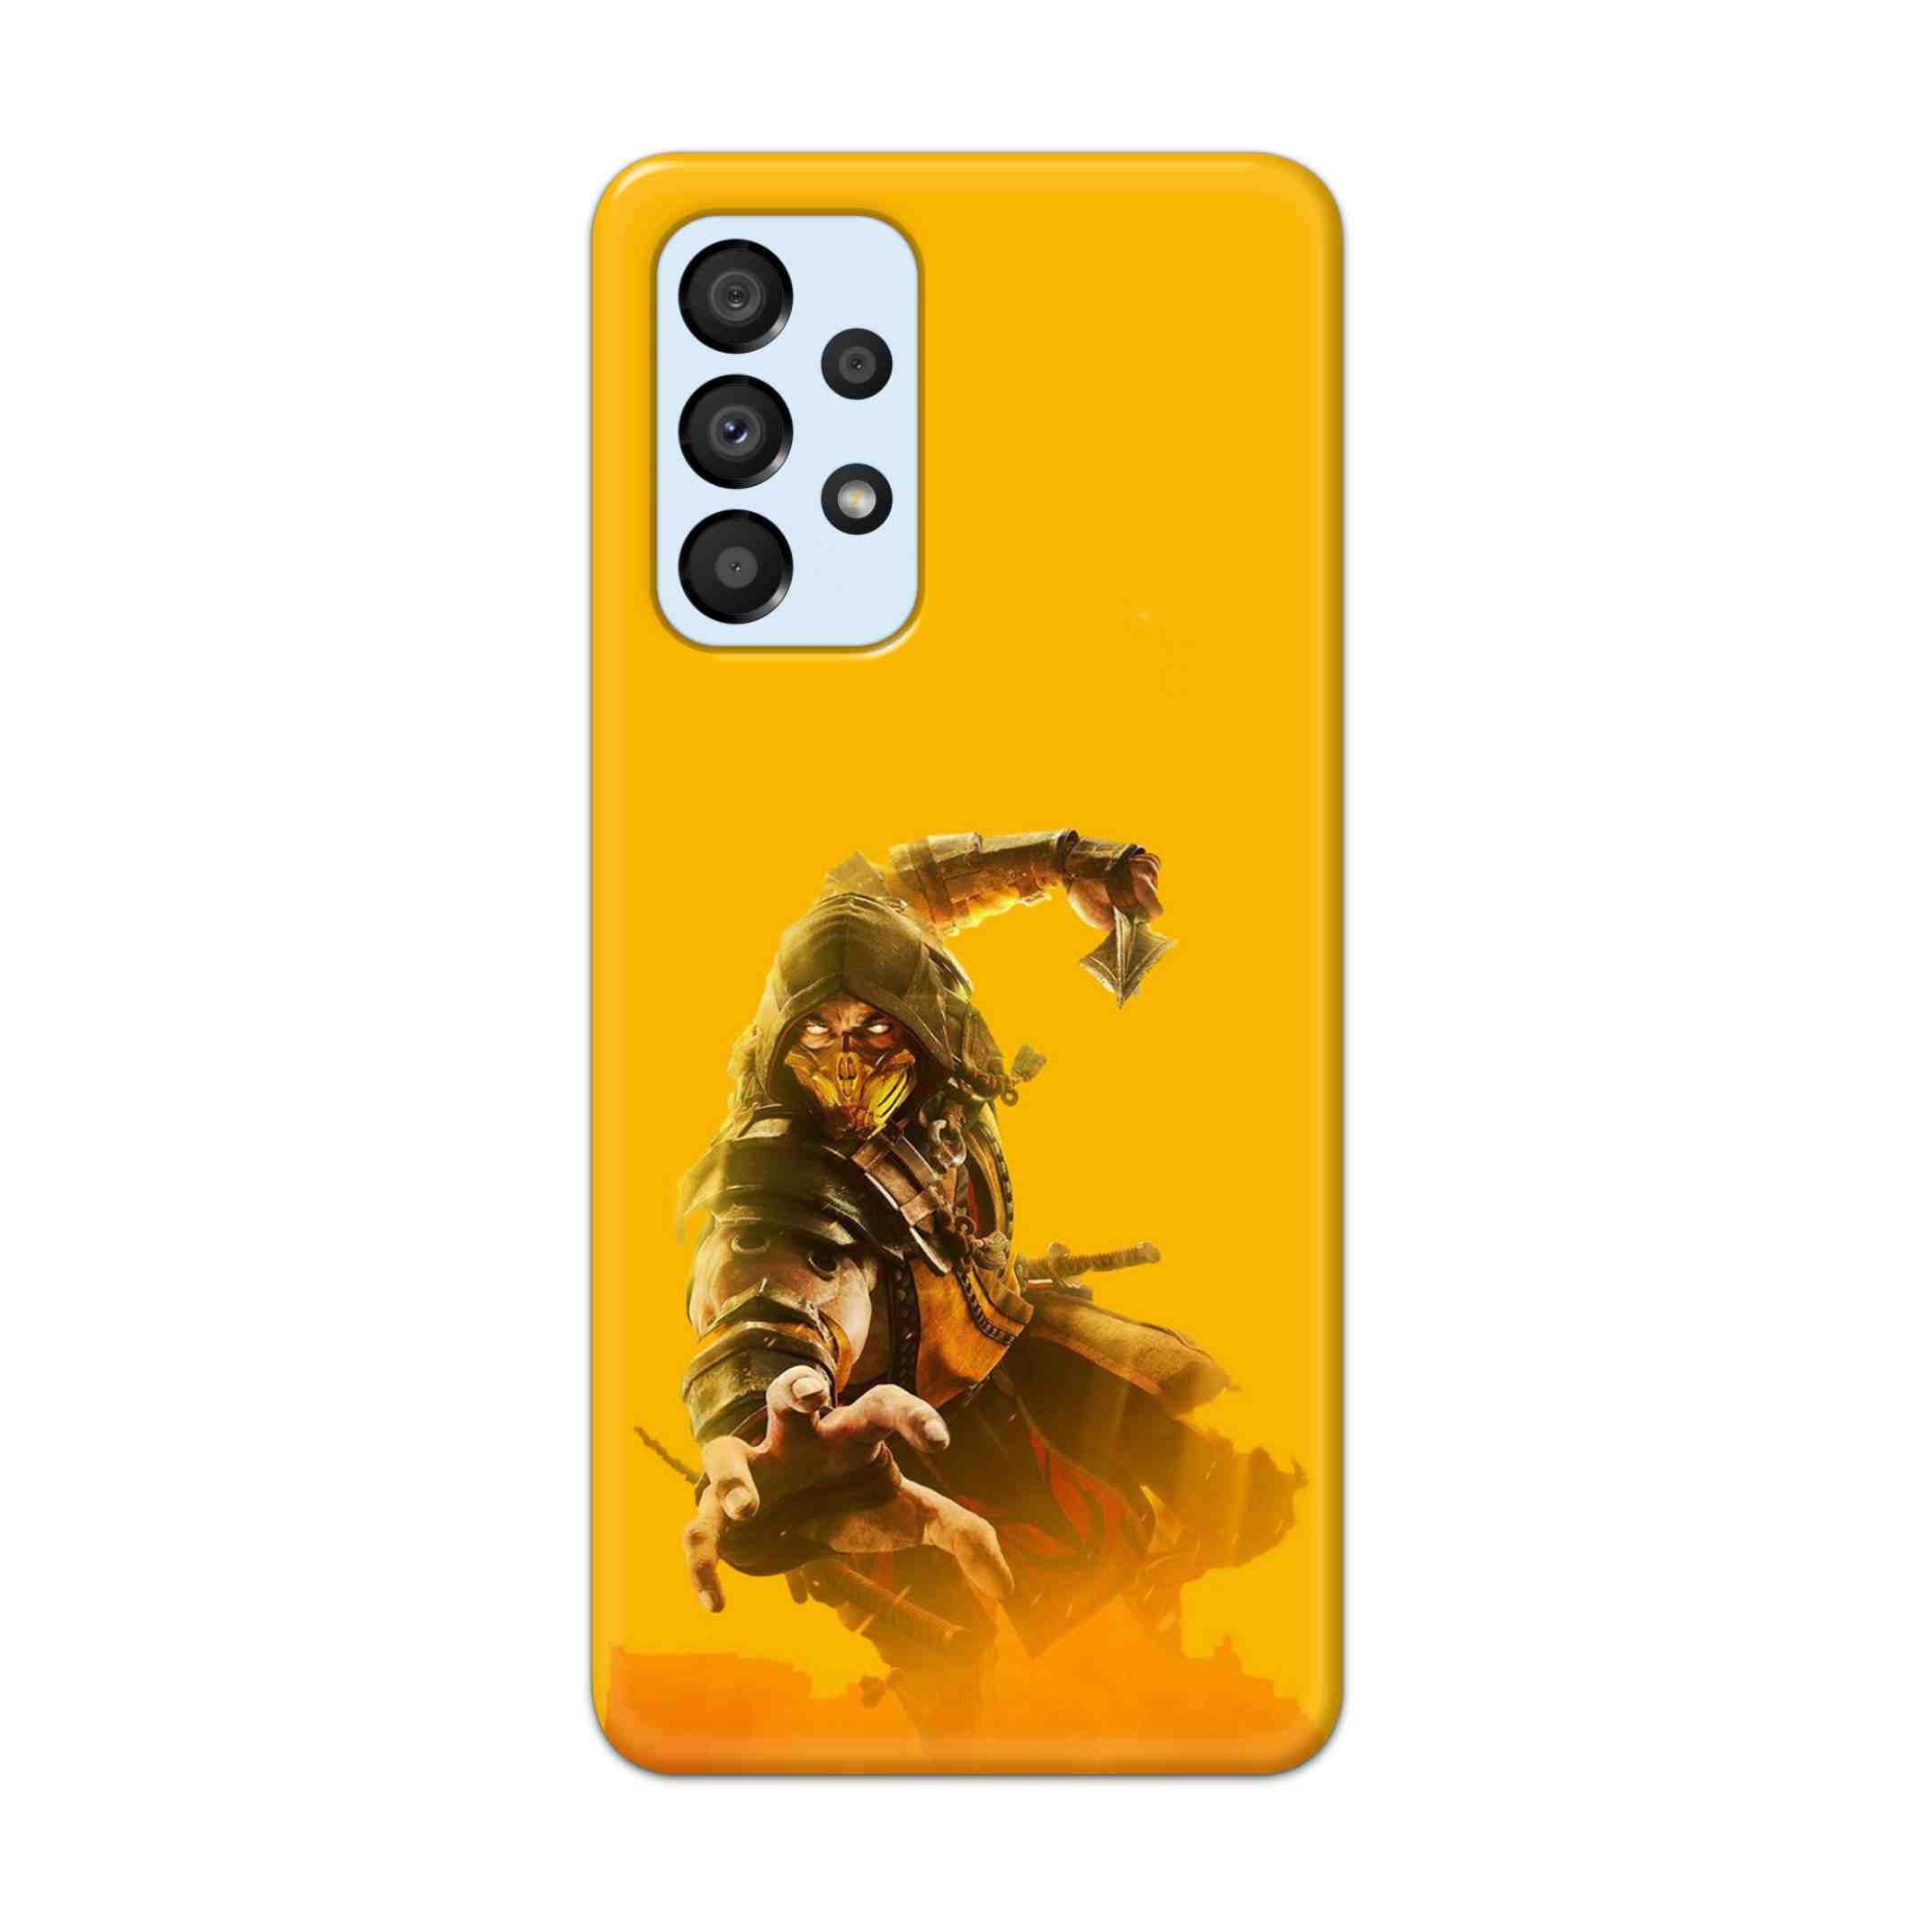 Buy Mortal Kombat Hard Back Mobile Phone Case Cover For Samsung A33 5G Online